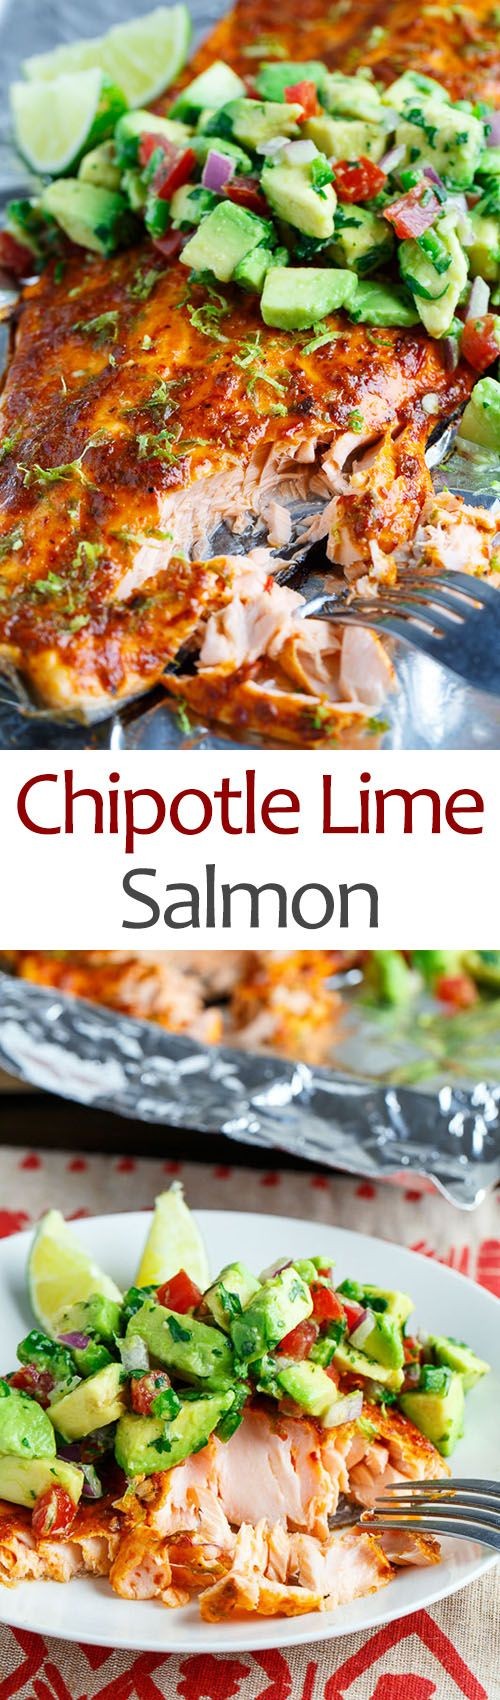 Chipotle Lime Salmon with Avocado Salsa